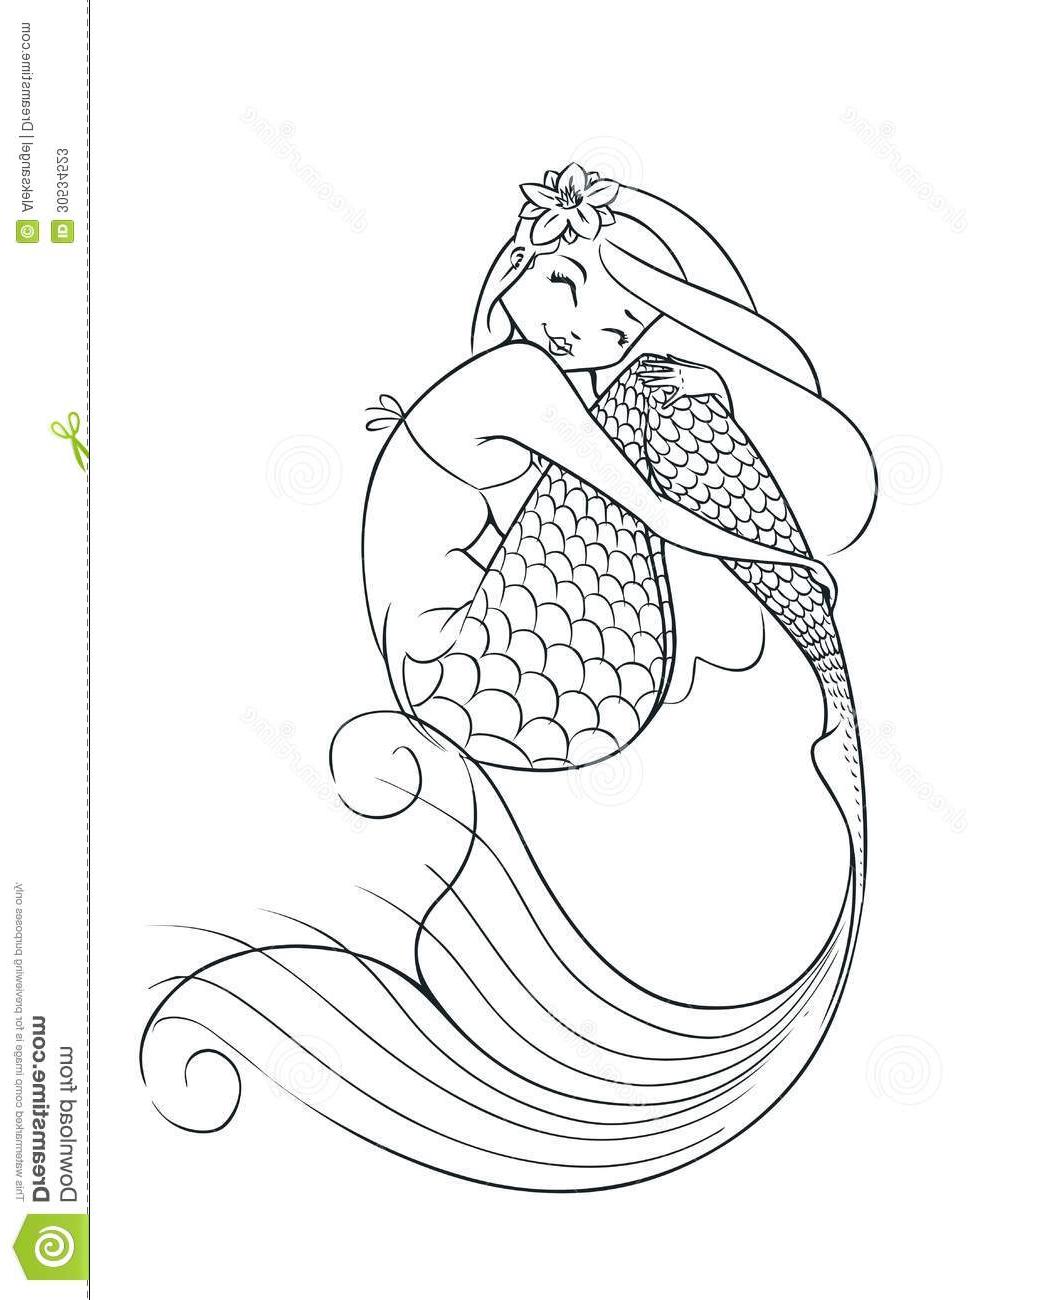 Mermaid Outline Drawing at GetDrawings | Free download